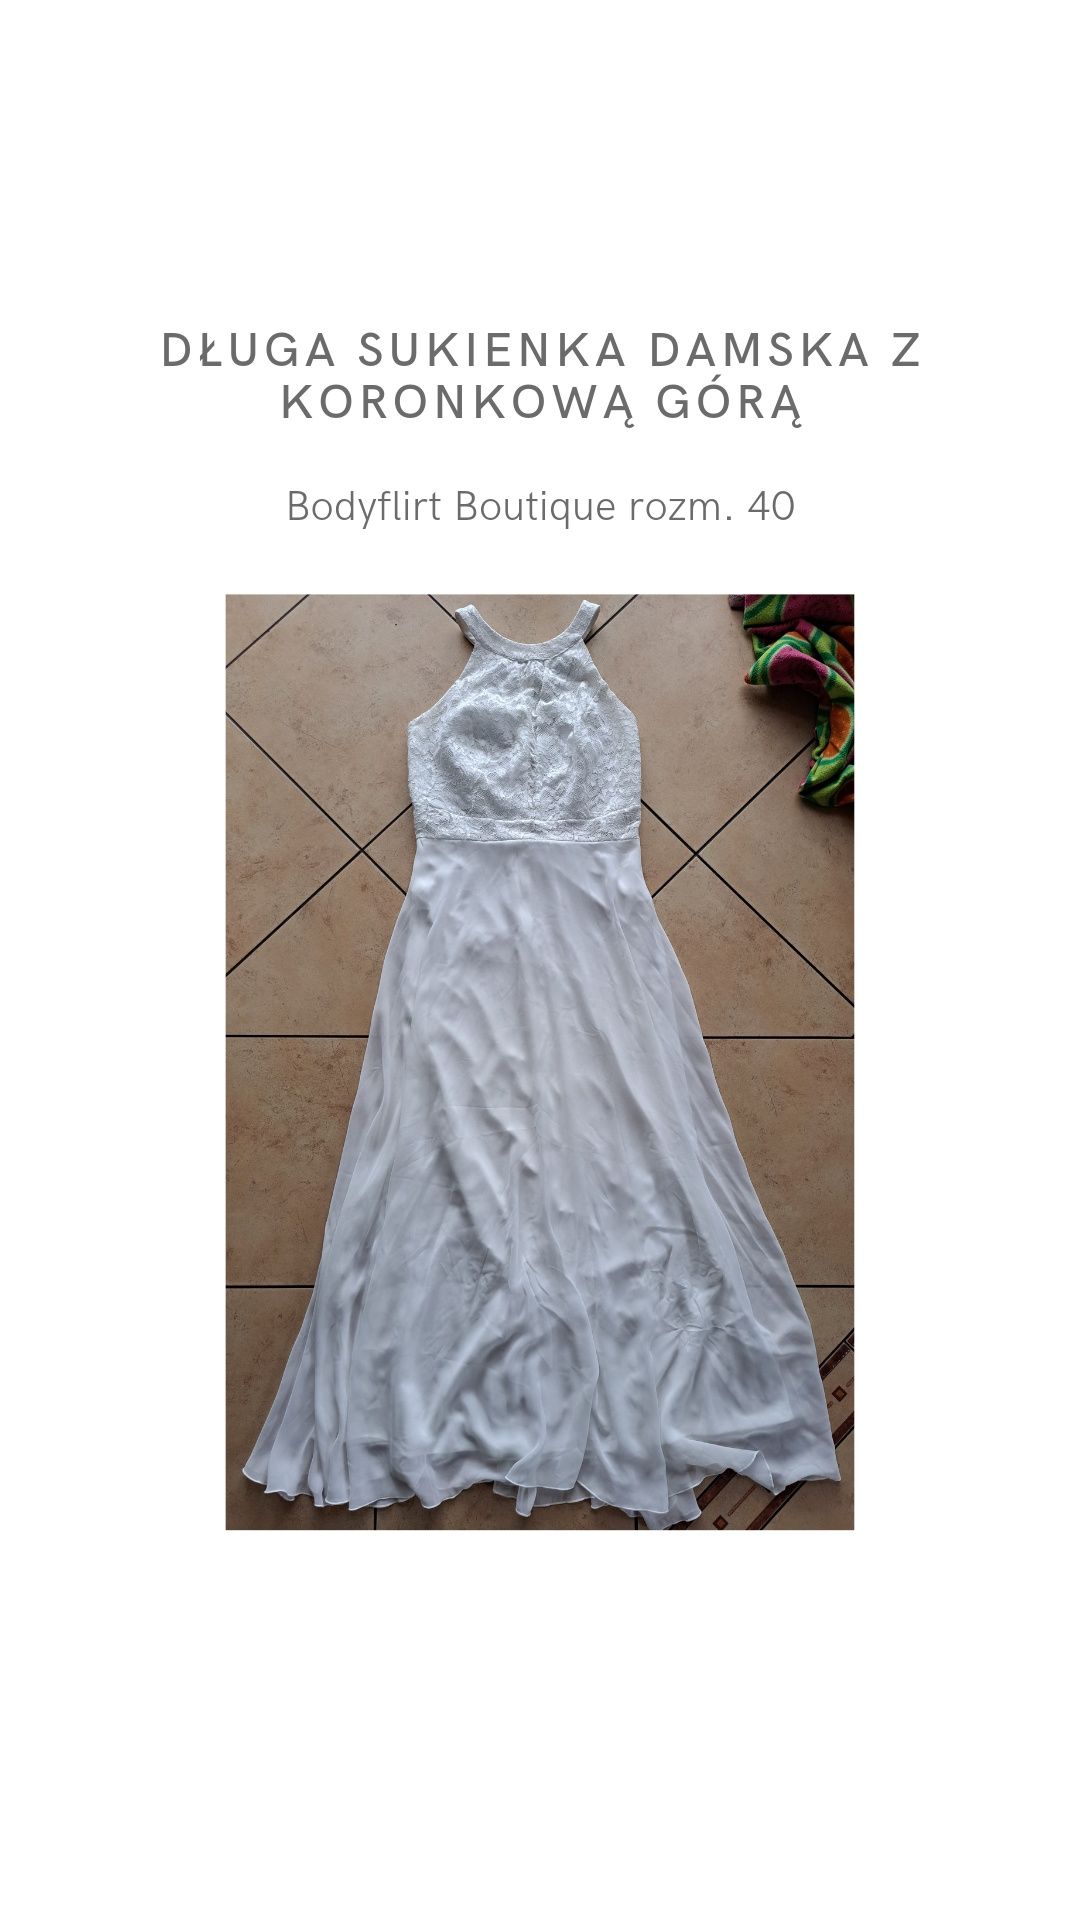 Długa sukienka damska z koronkową górą Bodyflirt Boutique rozm. 40